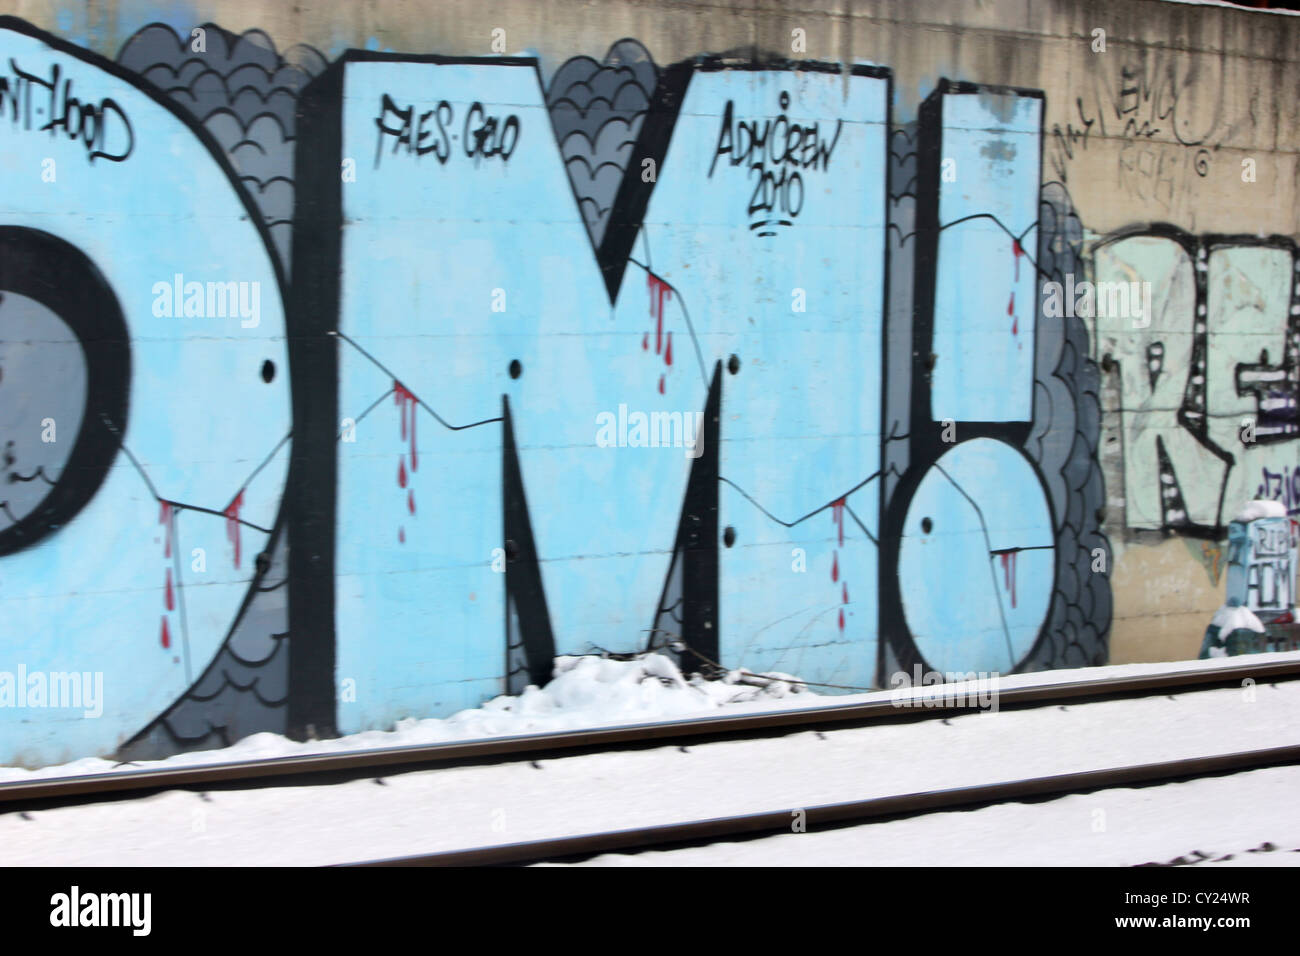 Coloridos murales de graffiti a lo largo de la estación de tren de invierno con nieve pistas, colorido, photoarkive Foto de stock